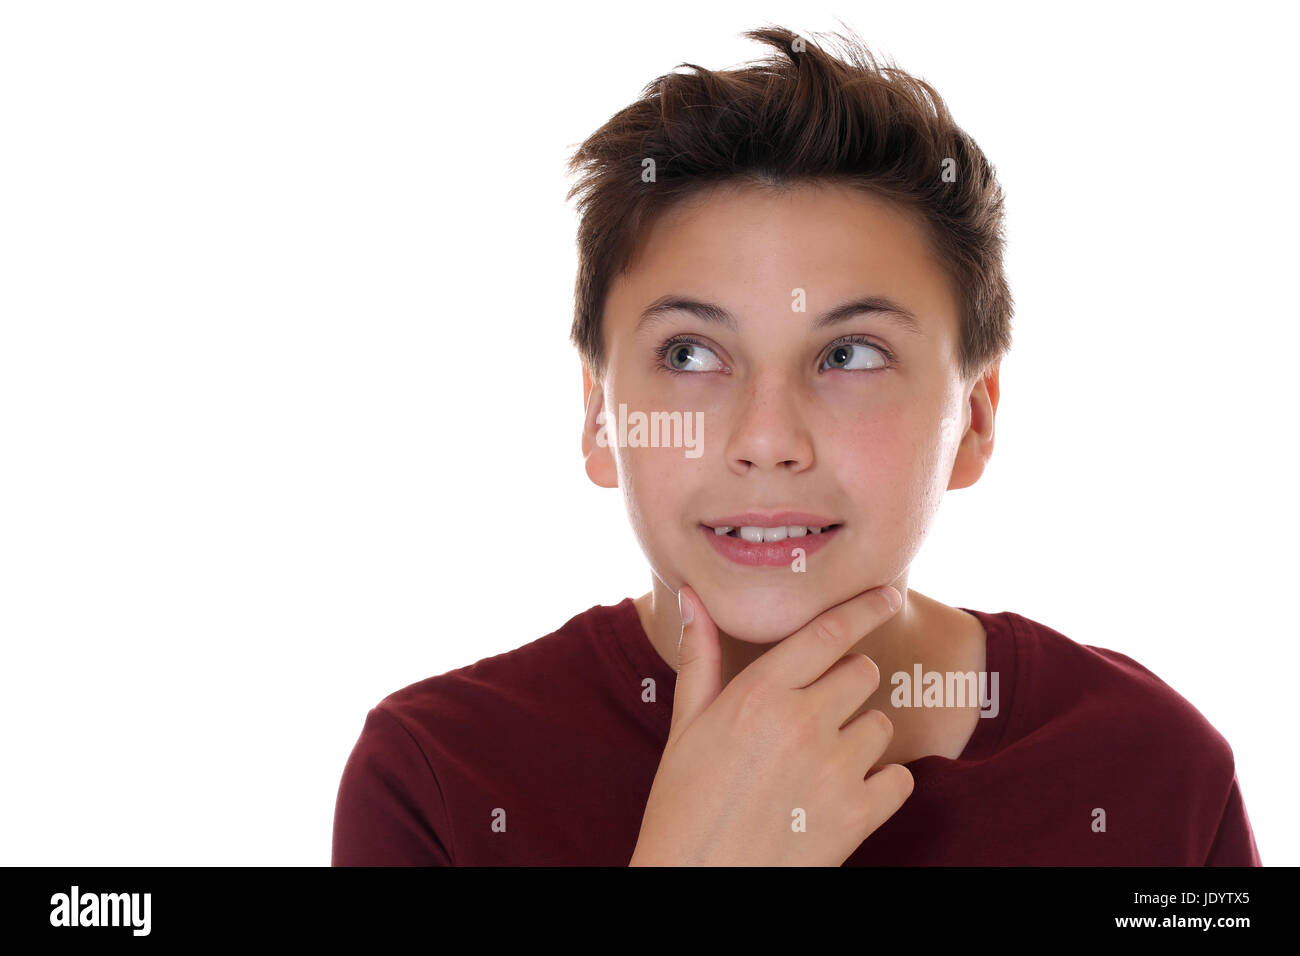 Junger Teenager beim Denken oder Träumen, isoliert vor einem weissen Hintergrund Stock Photo